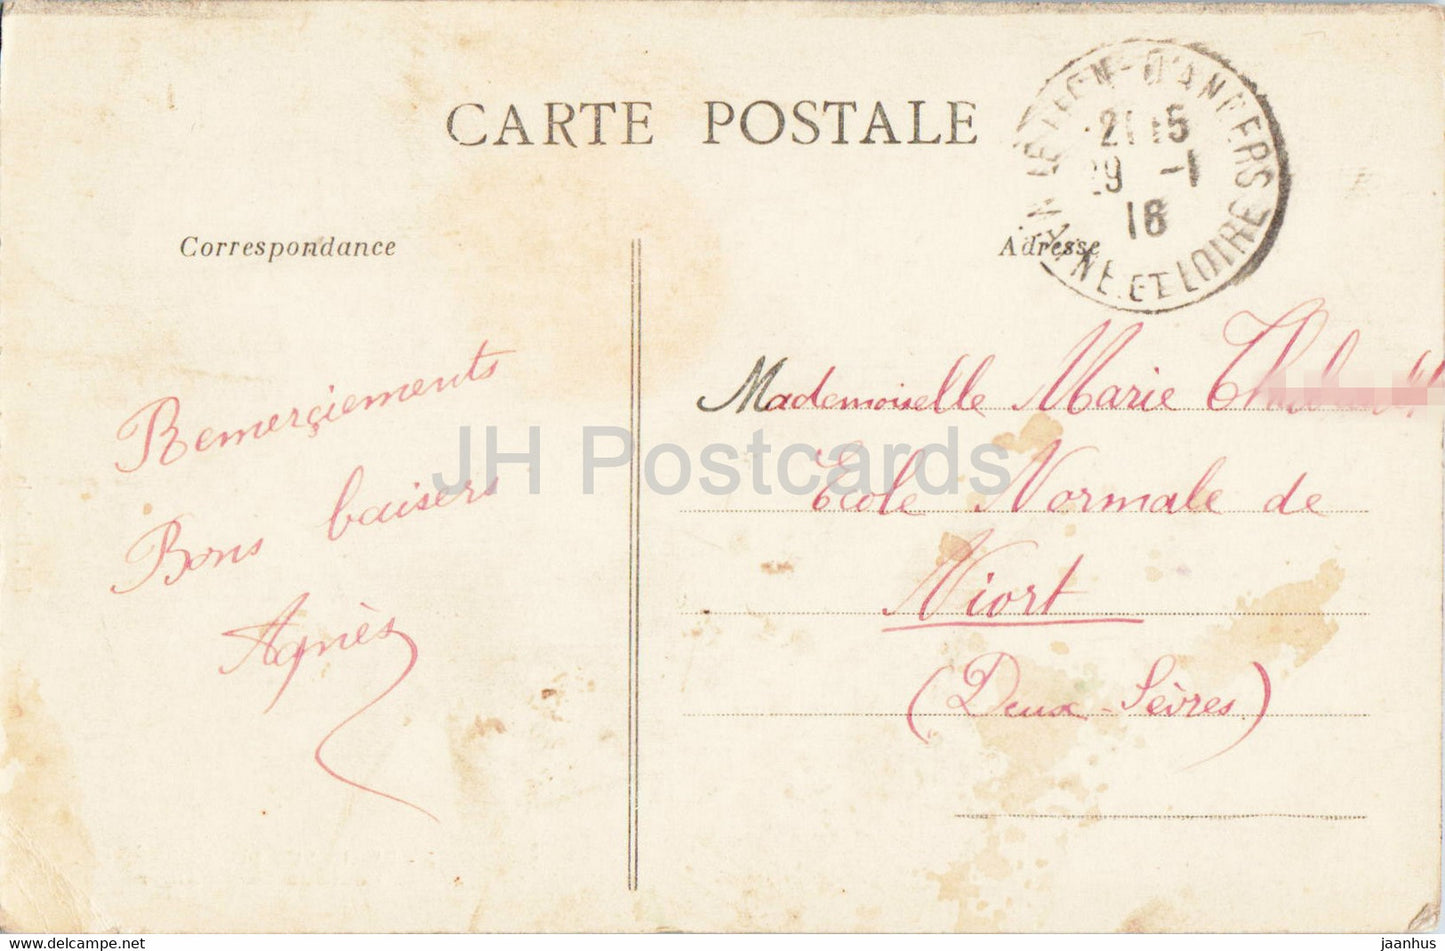 Btain sur Longuenee - Route du Lion d'Angers - old postcard - 1916 - France - used